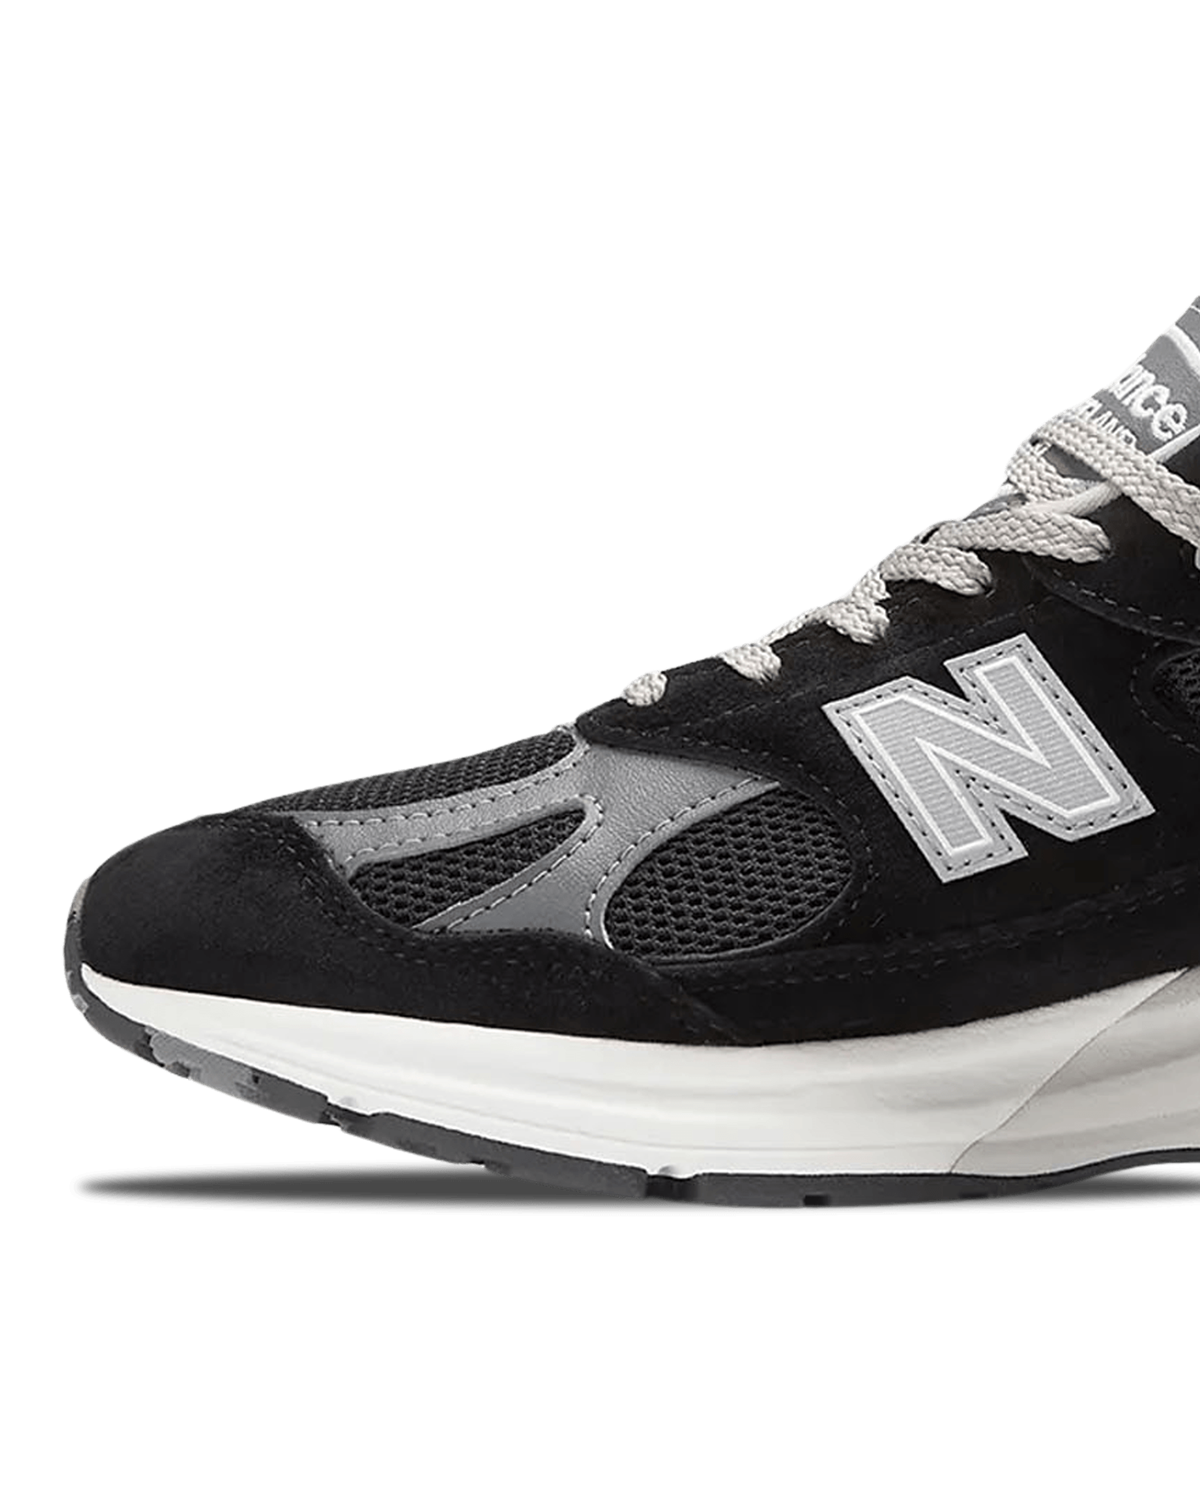 U991BK2 New Balance Footwear Sneakers Black